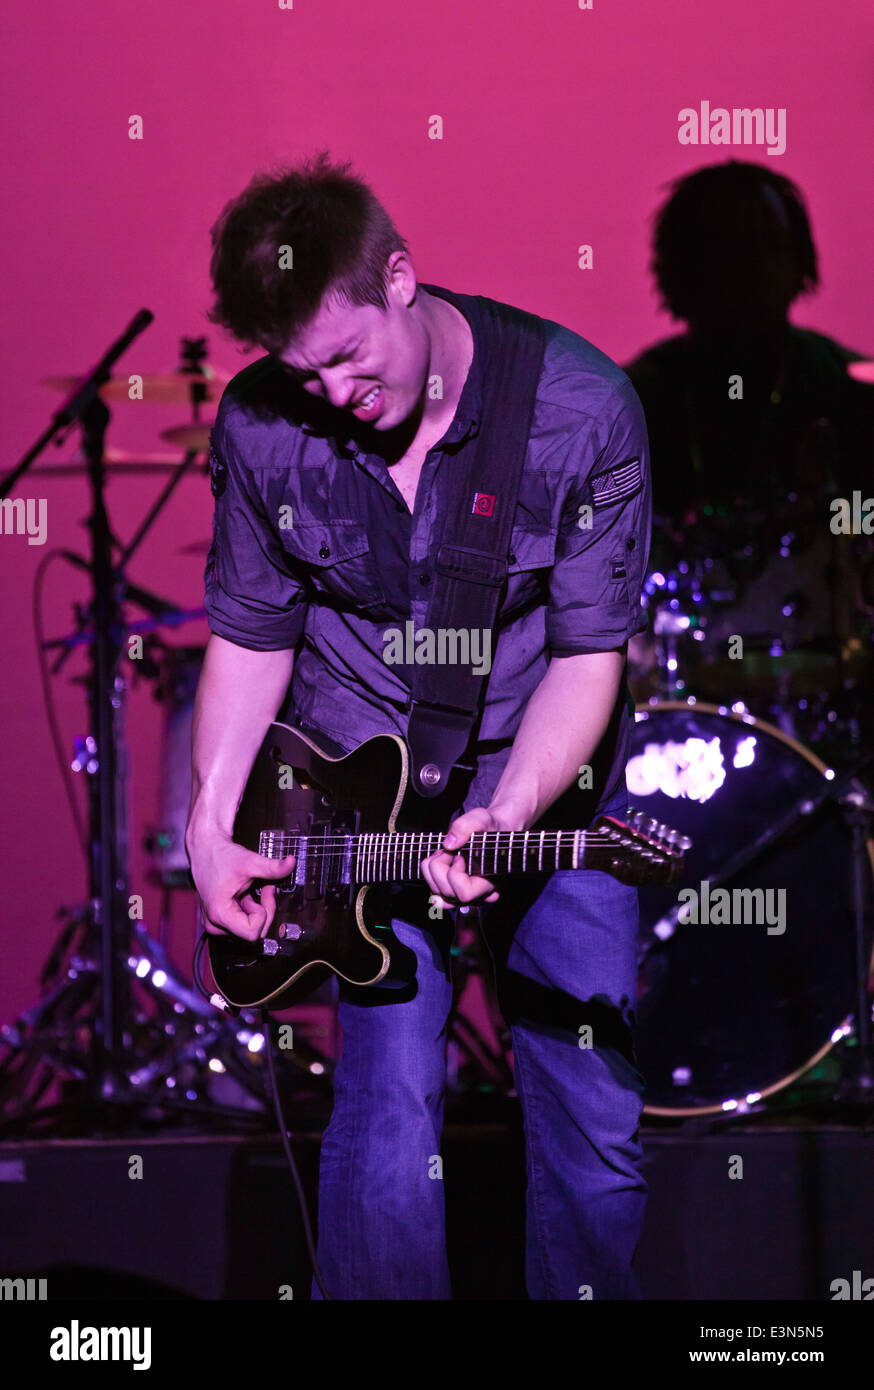 JONNY LANG préformes son Blues Music au Sunset Center - Carmel, Californie Banque D'Images